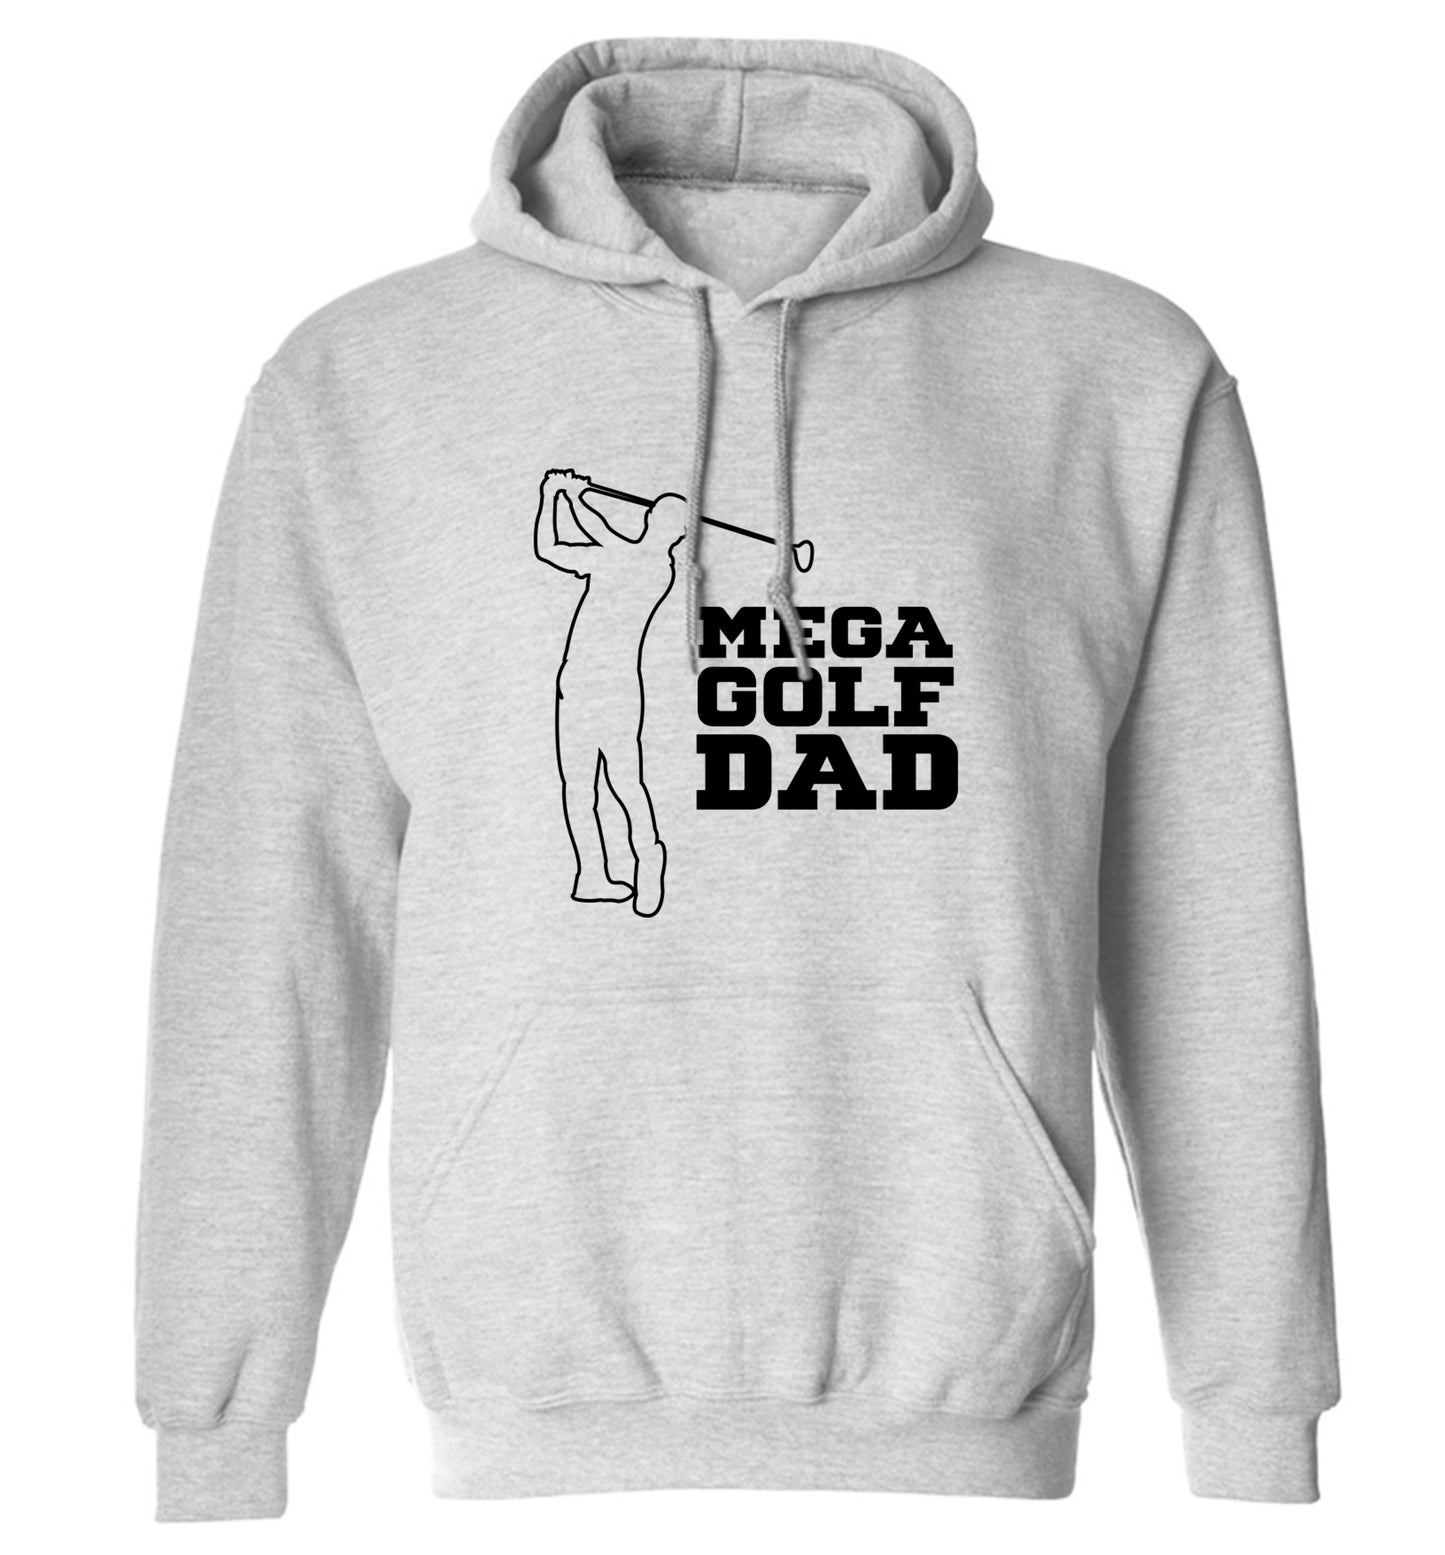 Mega golfing dad adults unisex grey hoodie 2XL